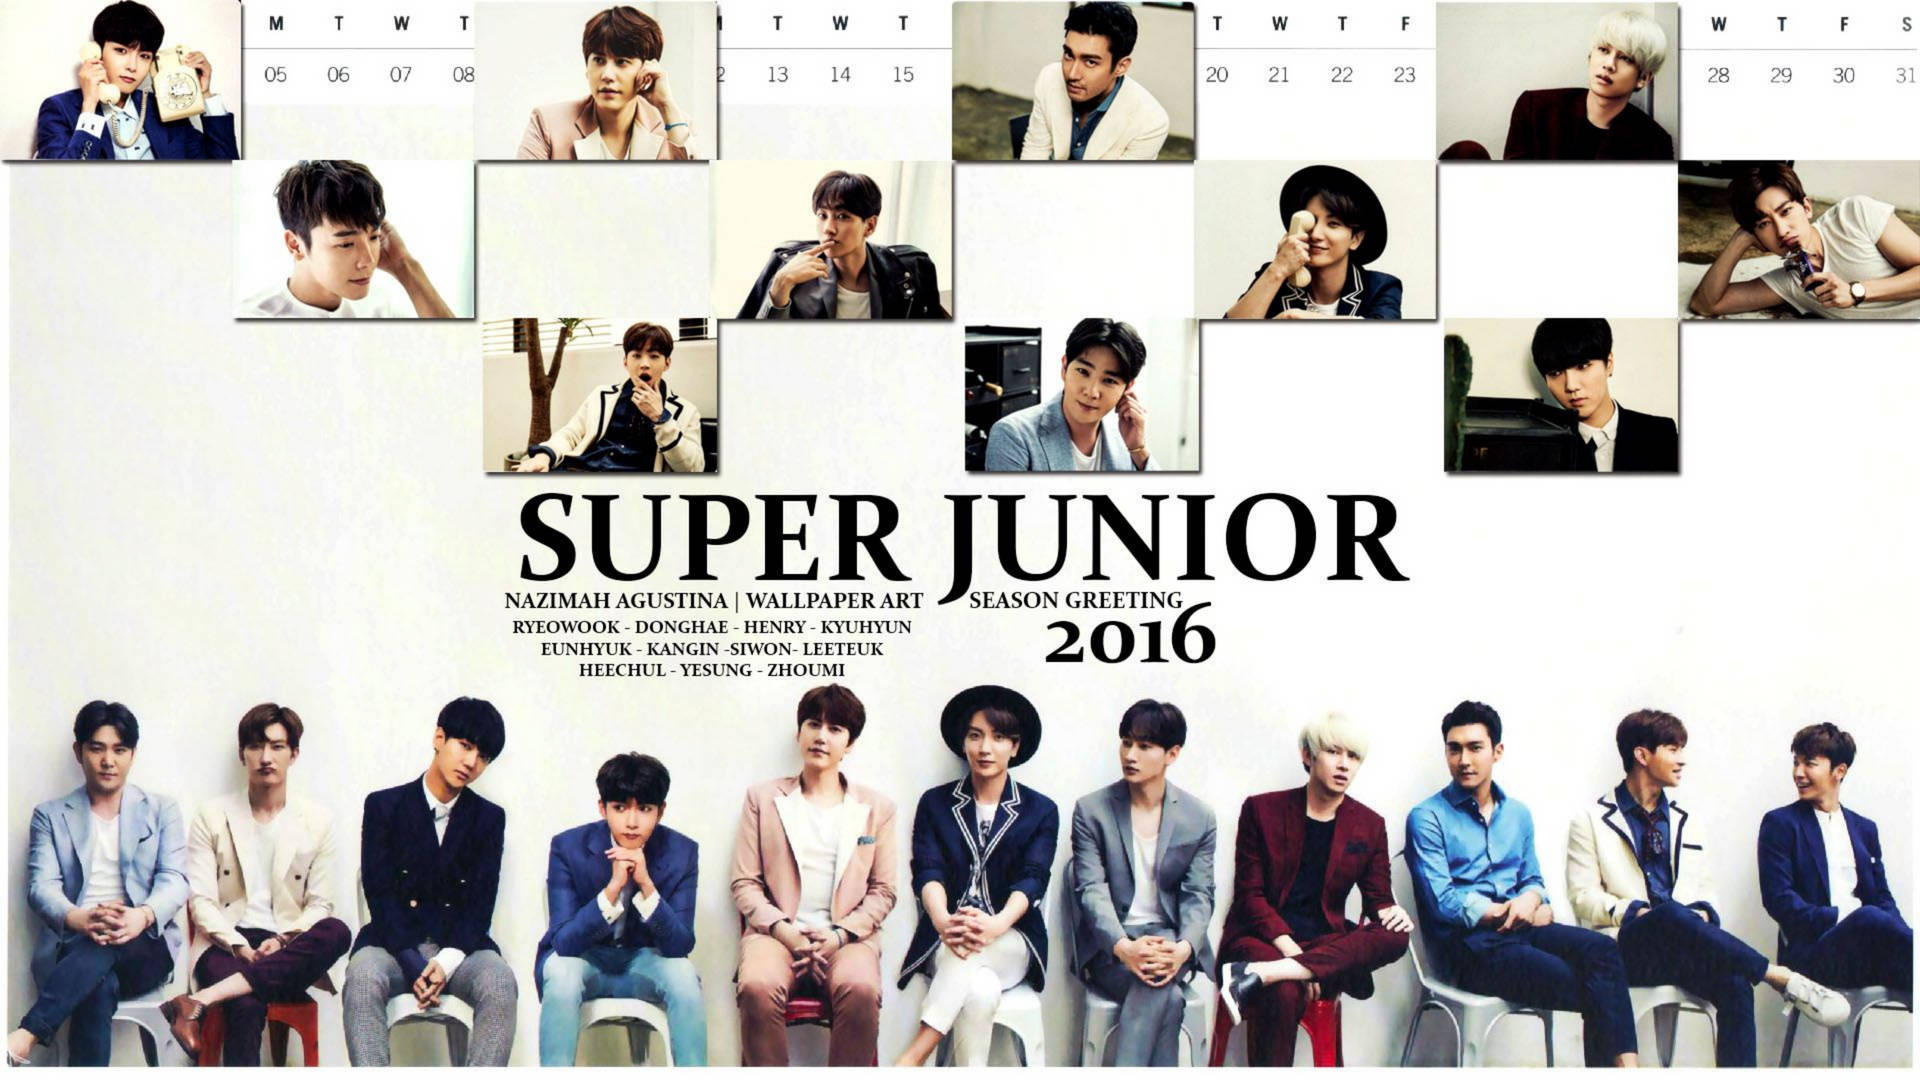 Super Junior 2016 Season Greeting Wallpaper